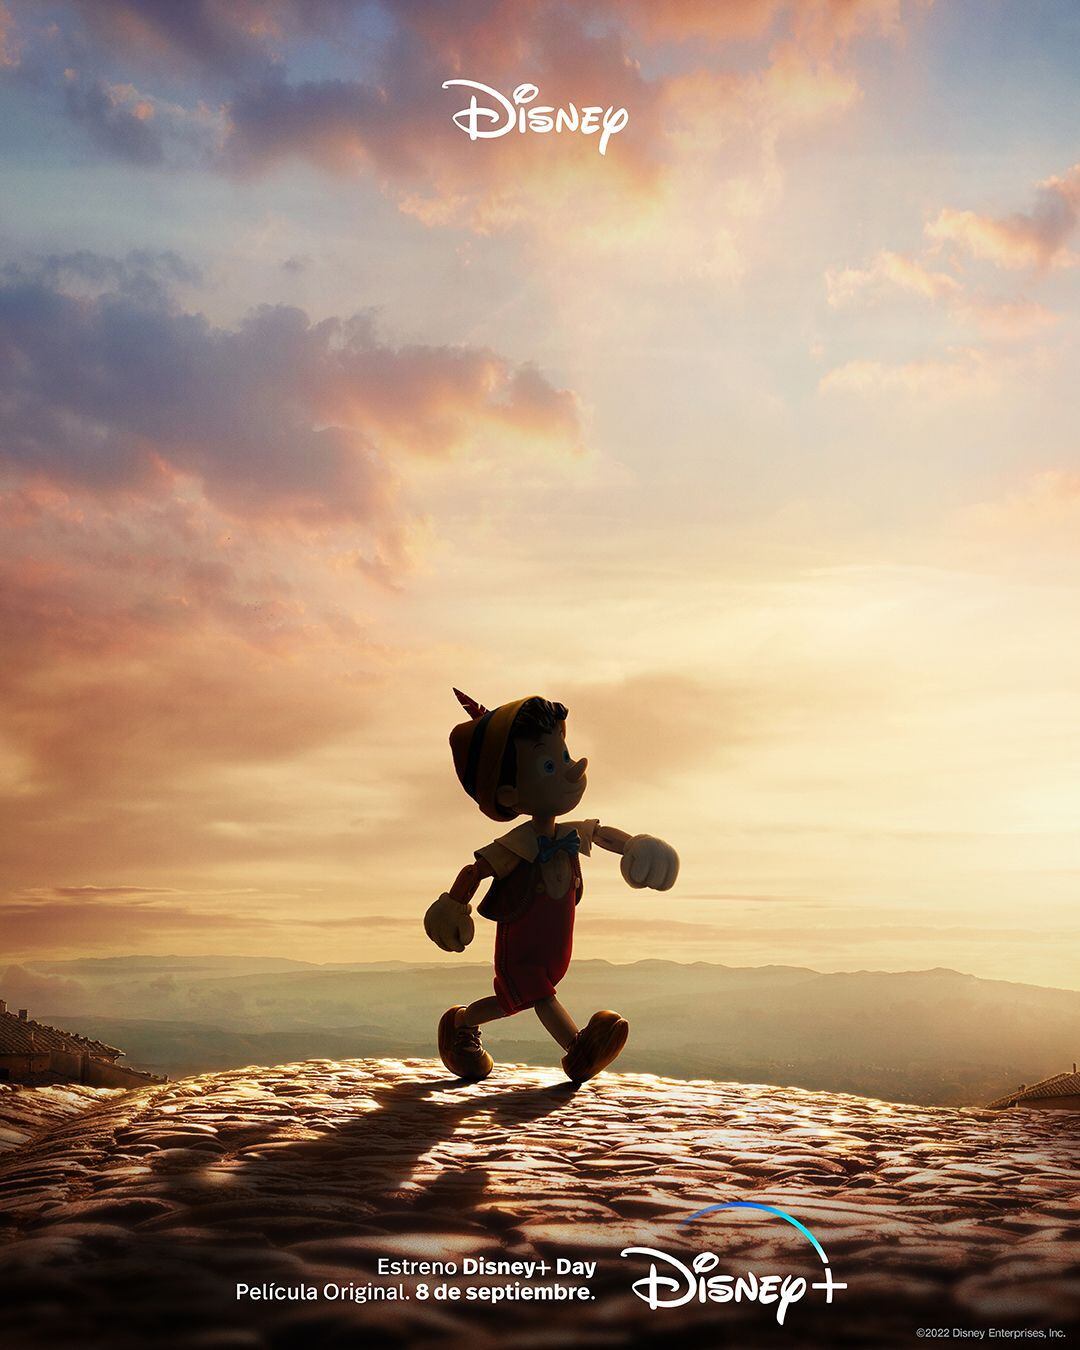 La película de "Pinocho" estará disponible el próximo 8 de septiembre a través de Disney+. (Foto: @disneyplusla)